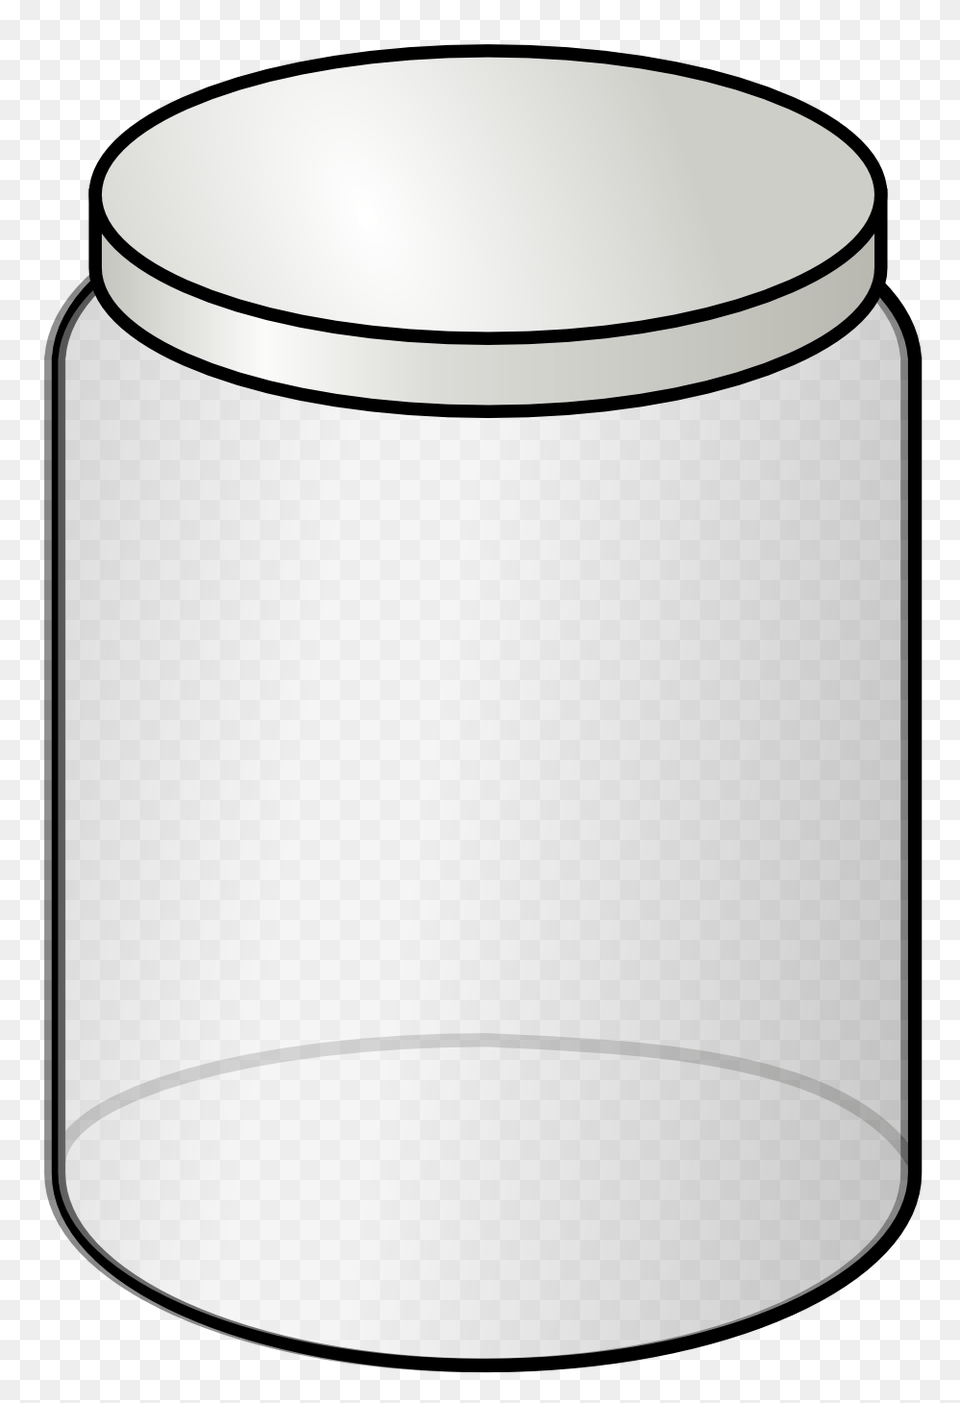 Mason Jar Outline Image, Cylinder, Glass, Bottle, Shaker Free Transparent Png